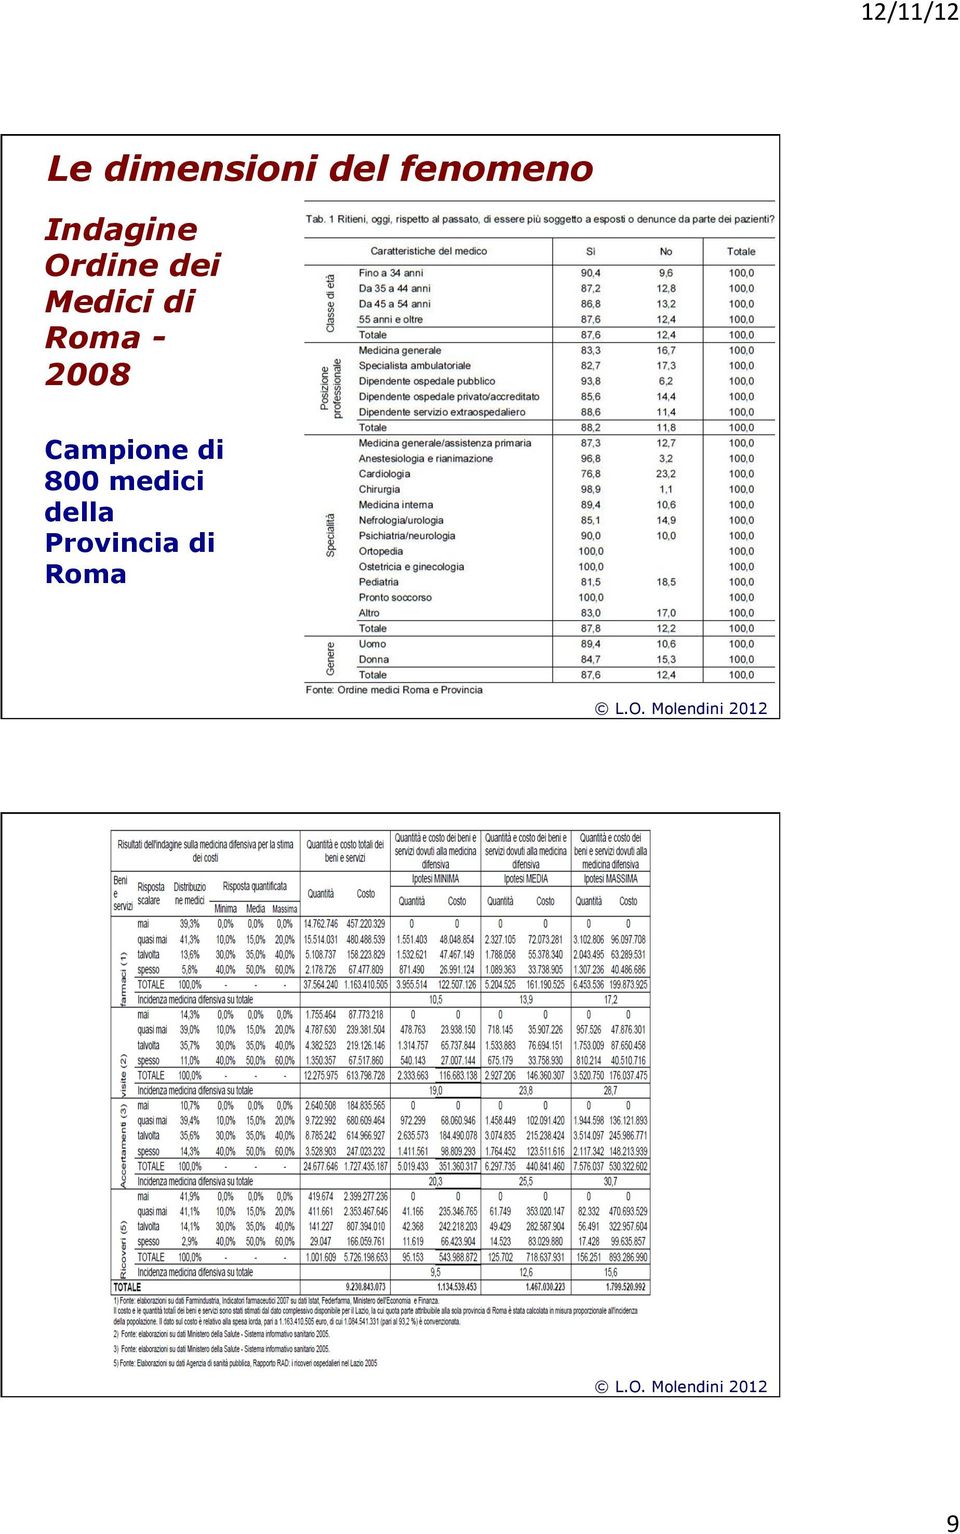 Roma - 2008 Campione di 800